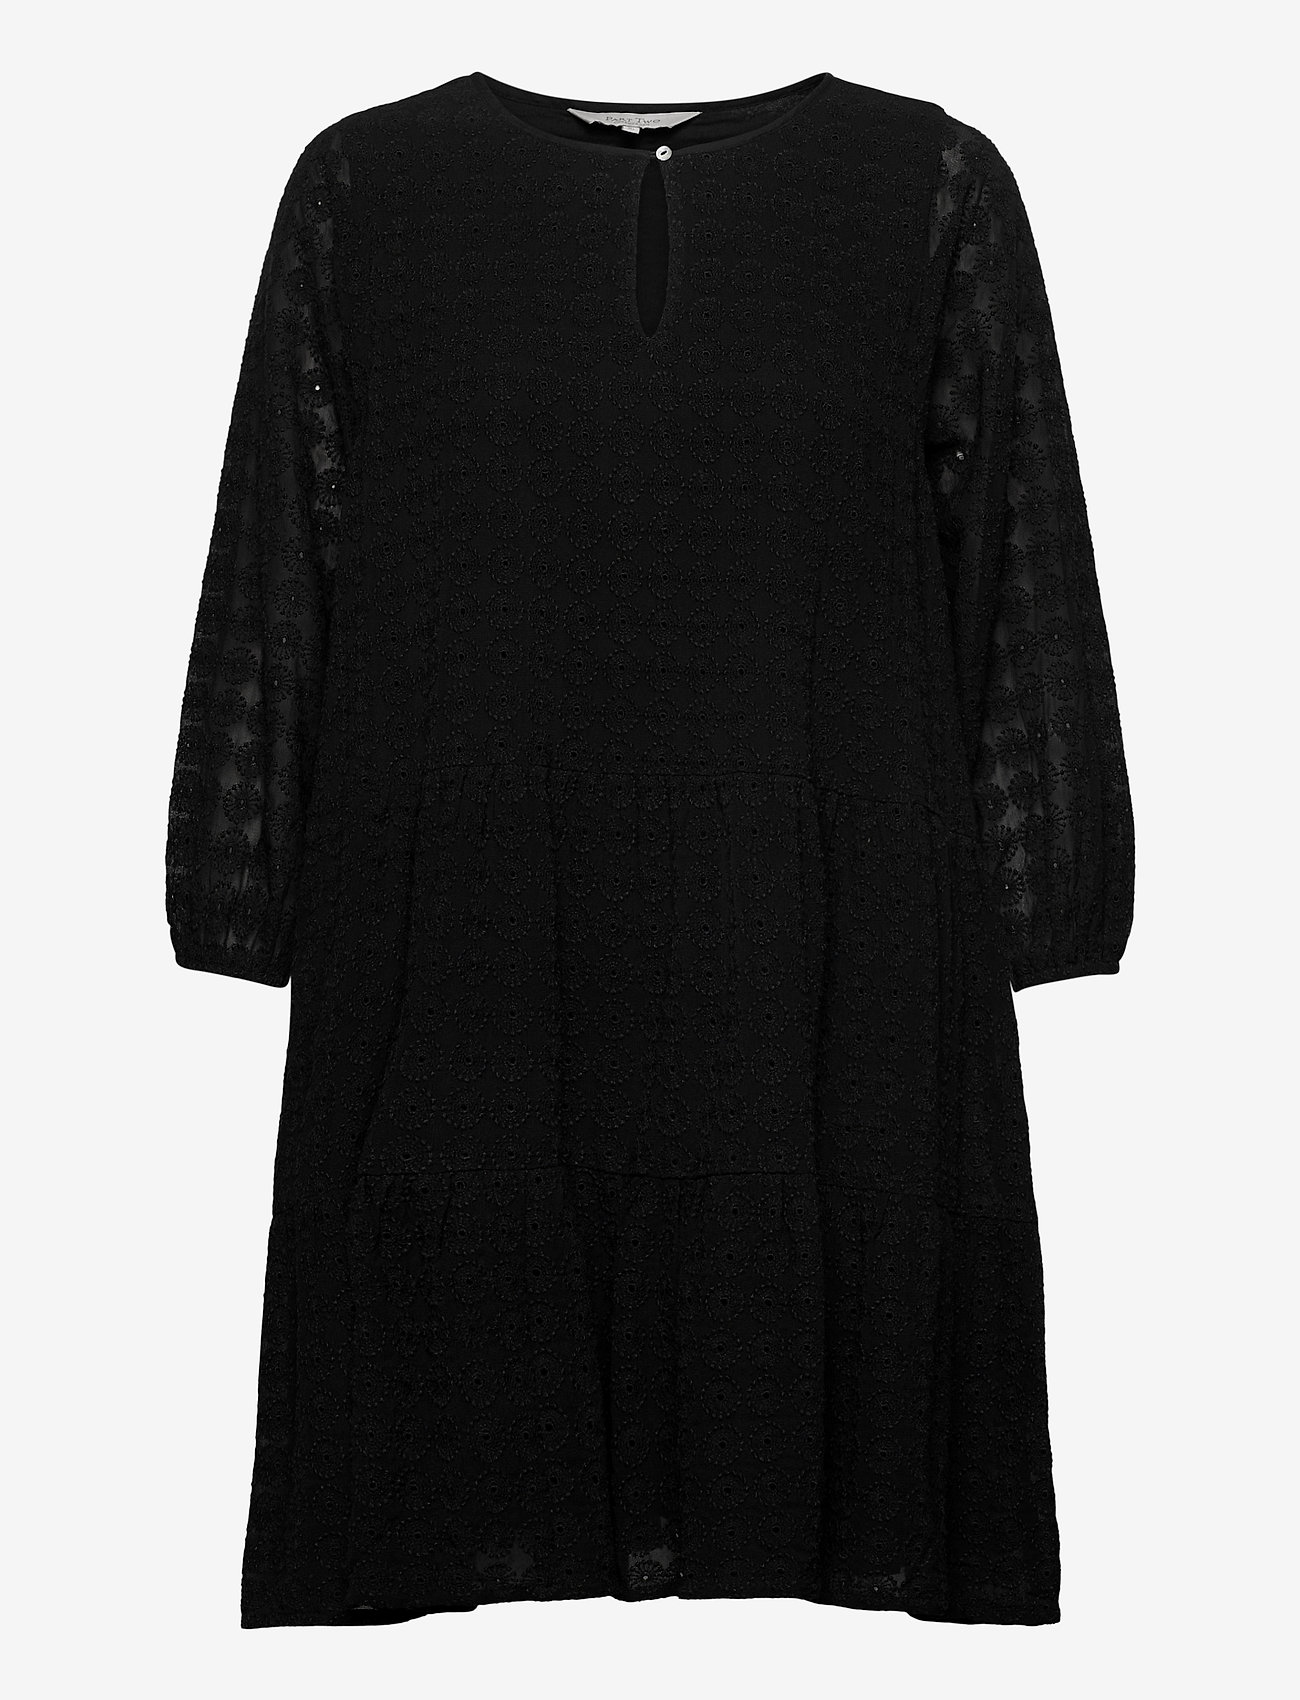 Part Two - EsePW DR - korte kjoler - black - 0